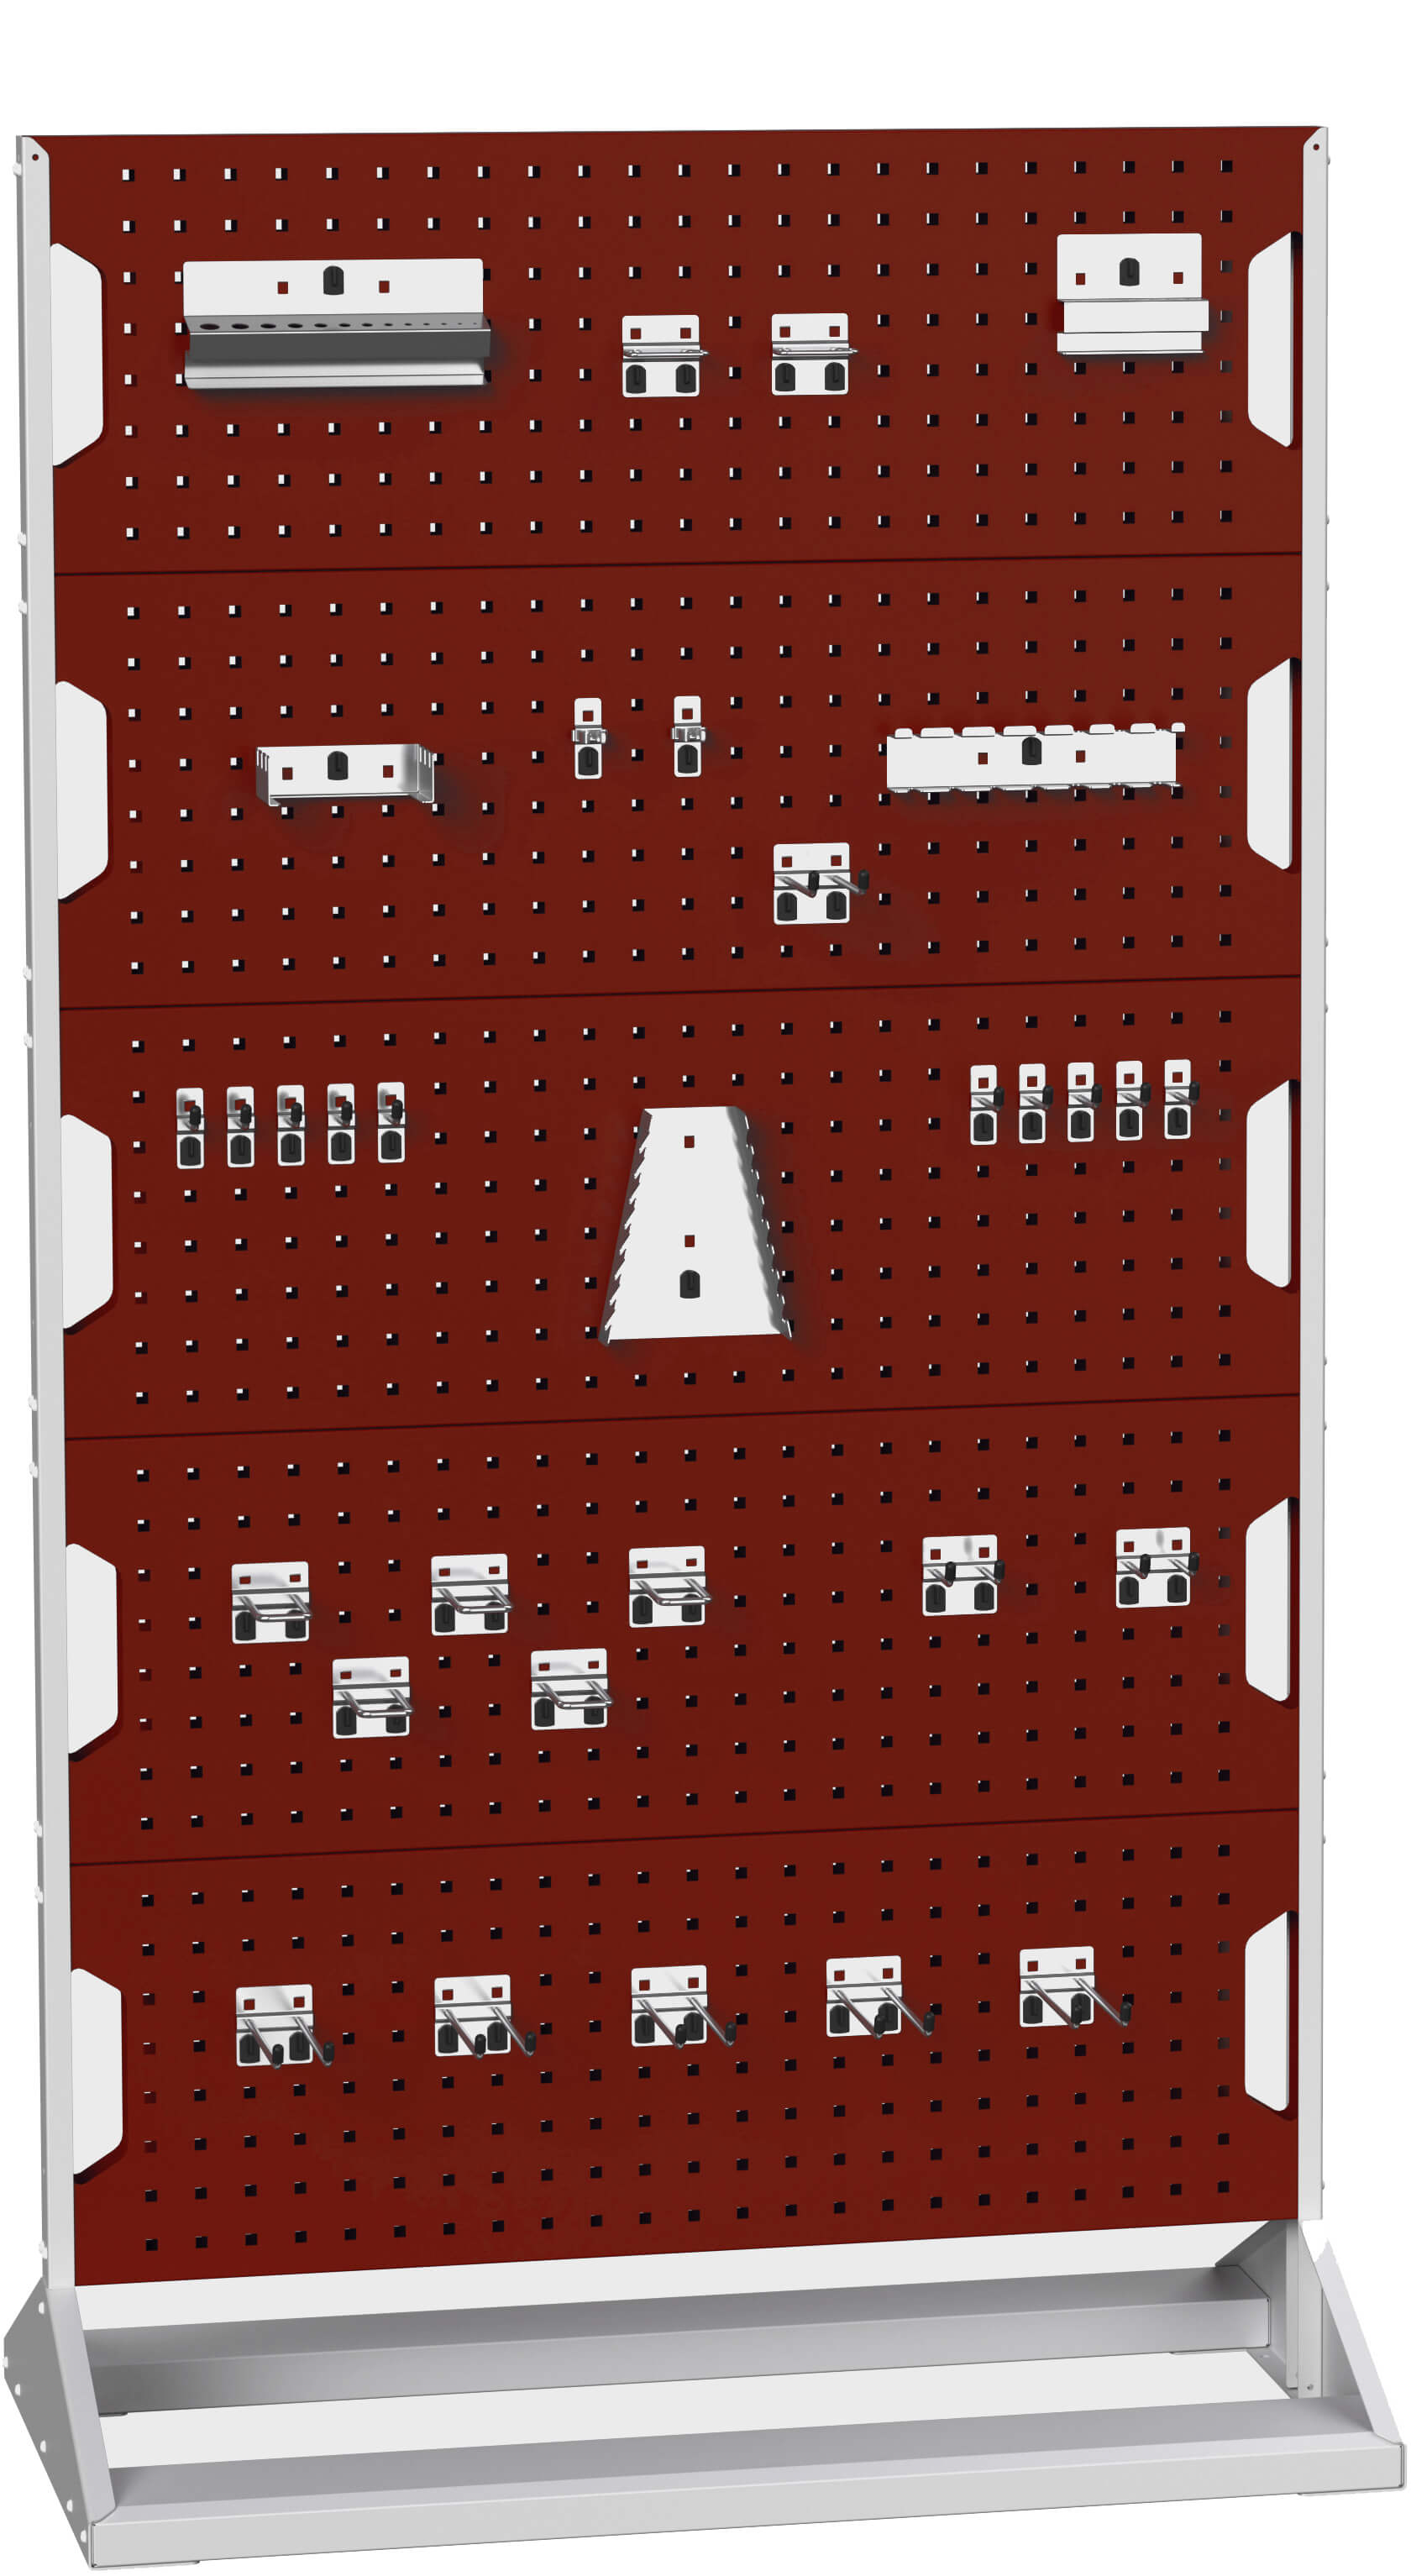 Bott Perfo Panel Rack (Double Sided) - 16917202.24V